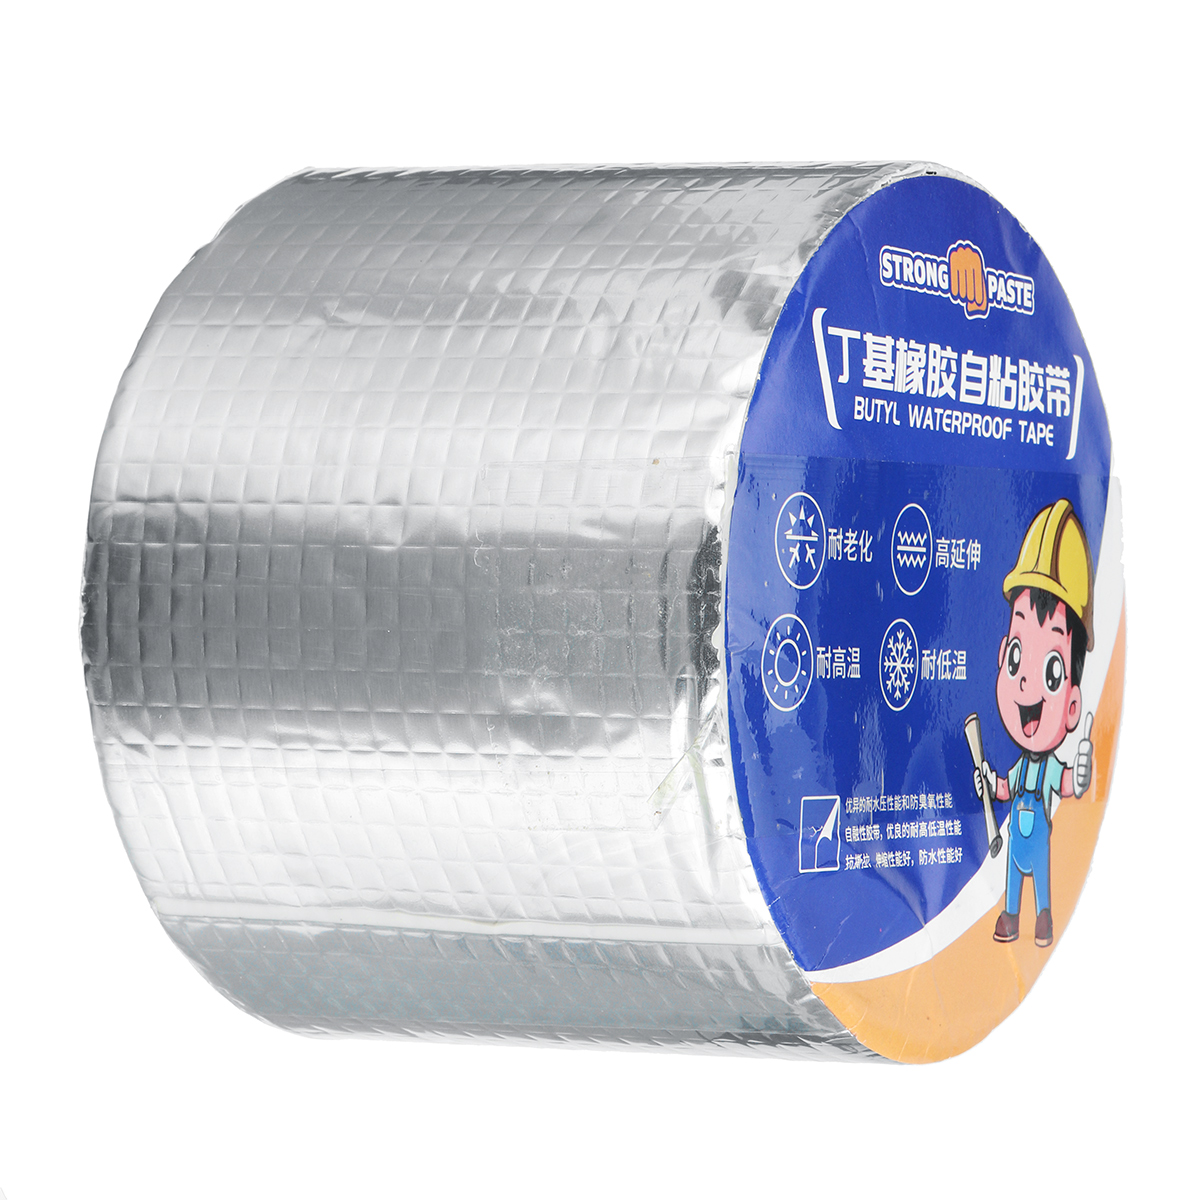 Aluminum-Foil-Butyl-Rubber-Tape-Self-Adhesive-Waterproof-Home-Roof-Pipe-Repair-Tape-1681292-8